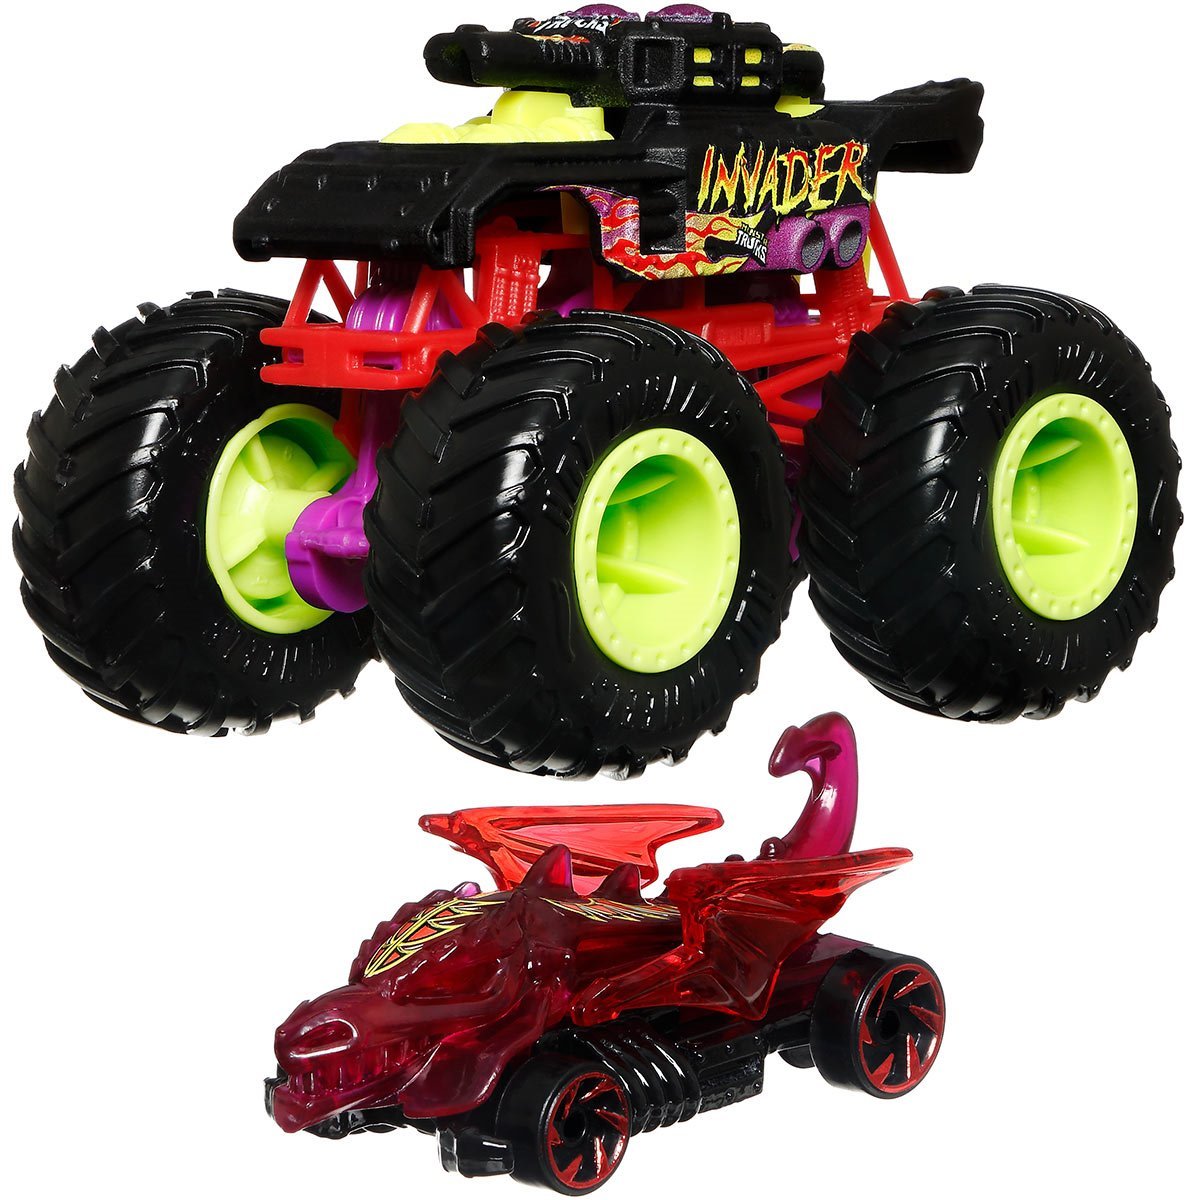 Hot Wheels Monster Trucks Live 8-Pack, Toy Trucks, Gift for Kids 3